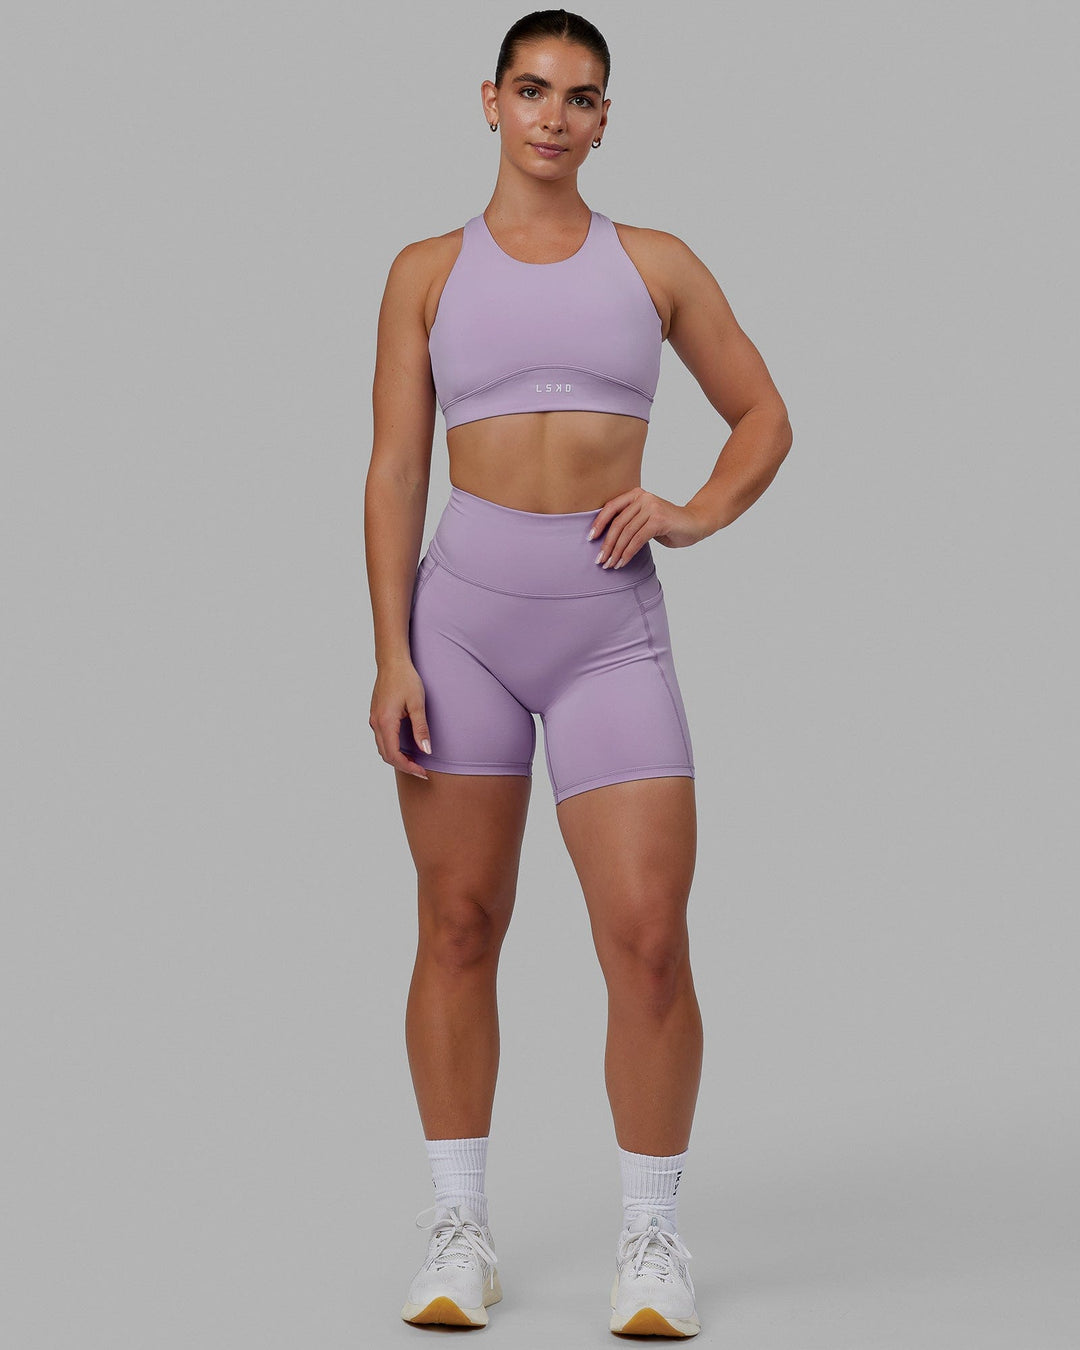 Fusion Sports Bra - Pale Lilac